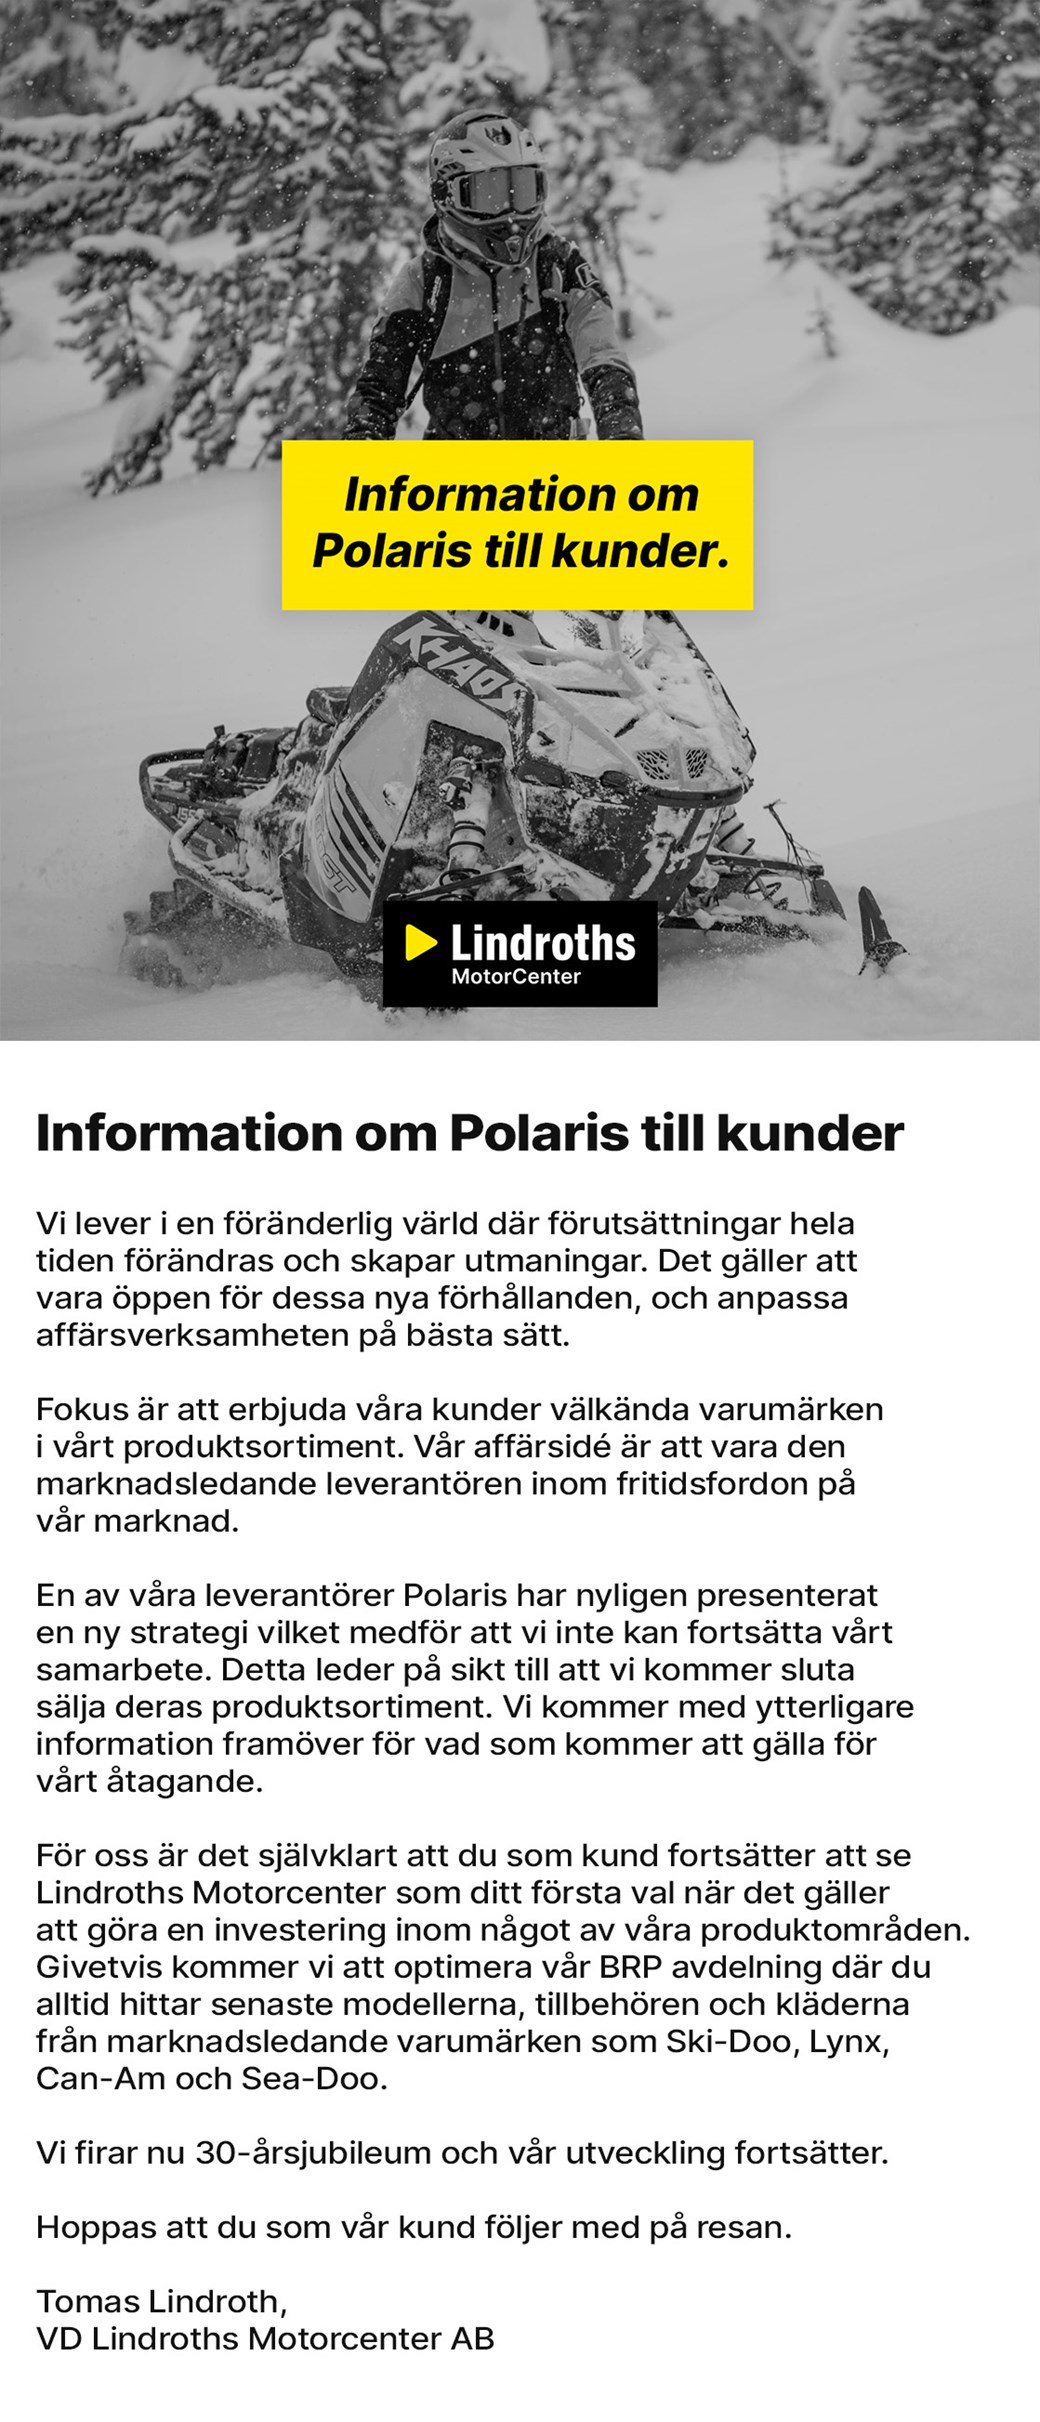 Information om Polaris